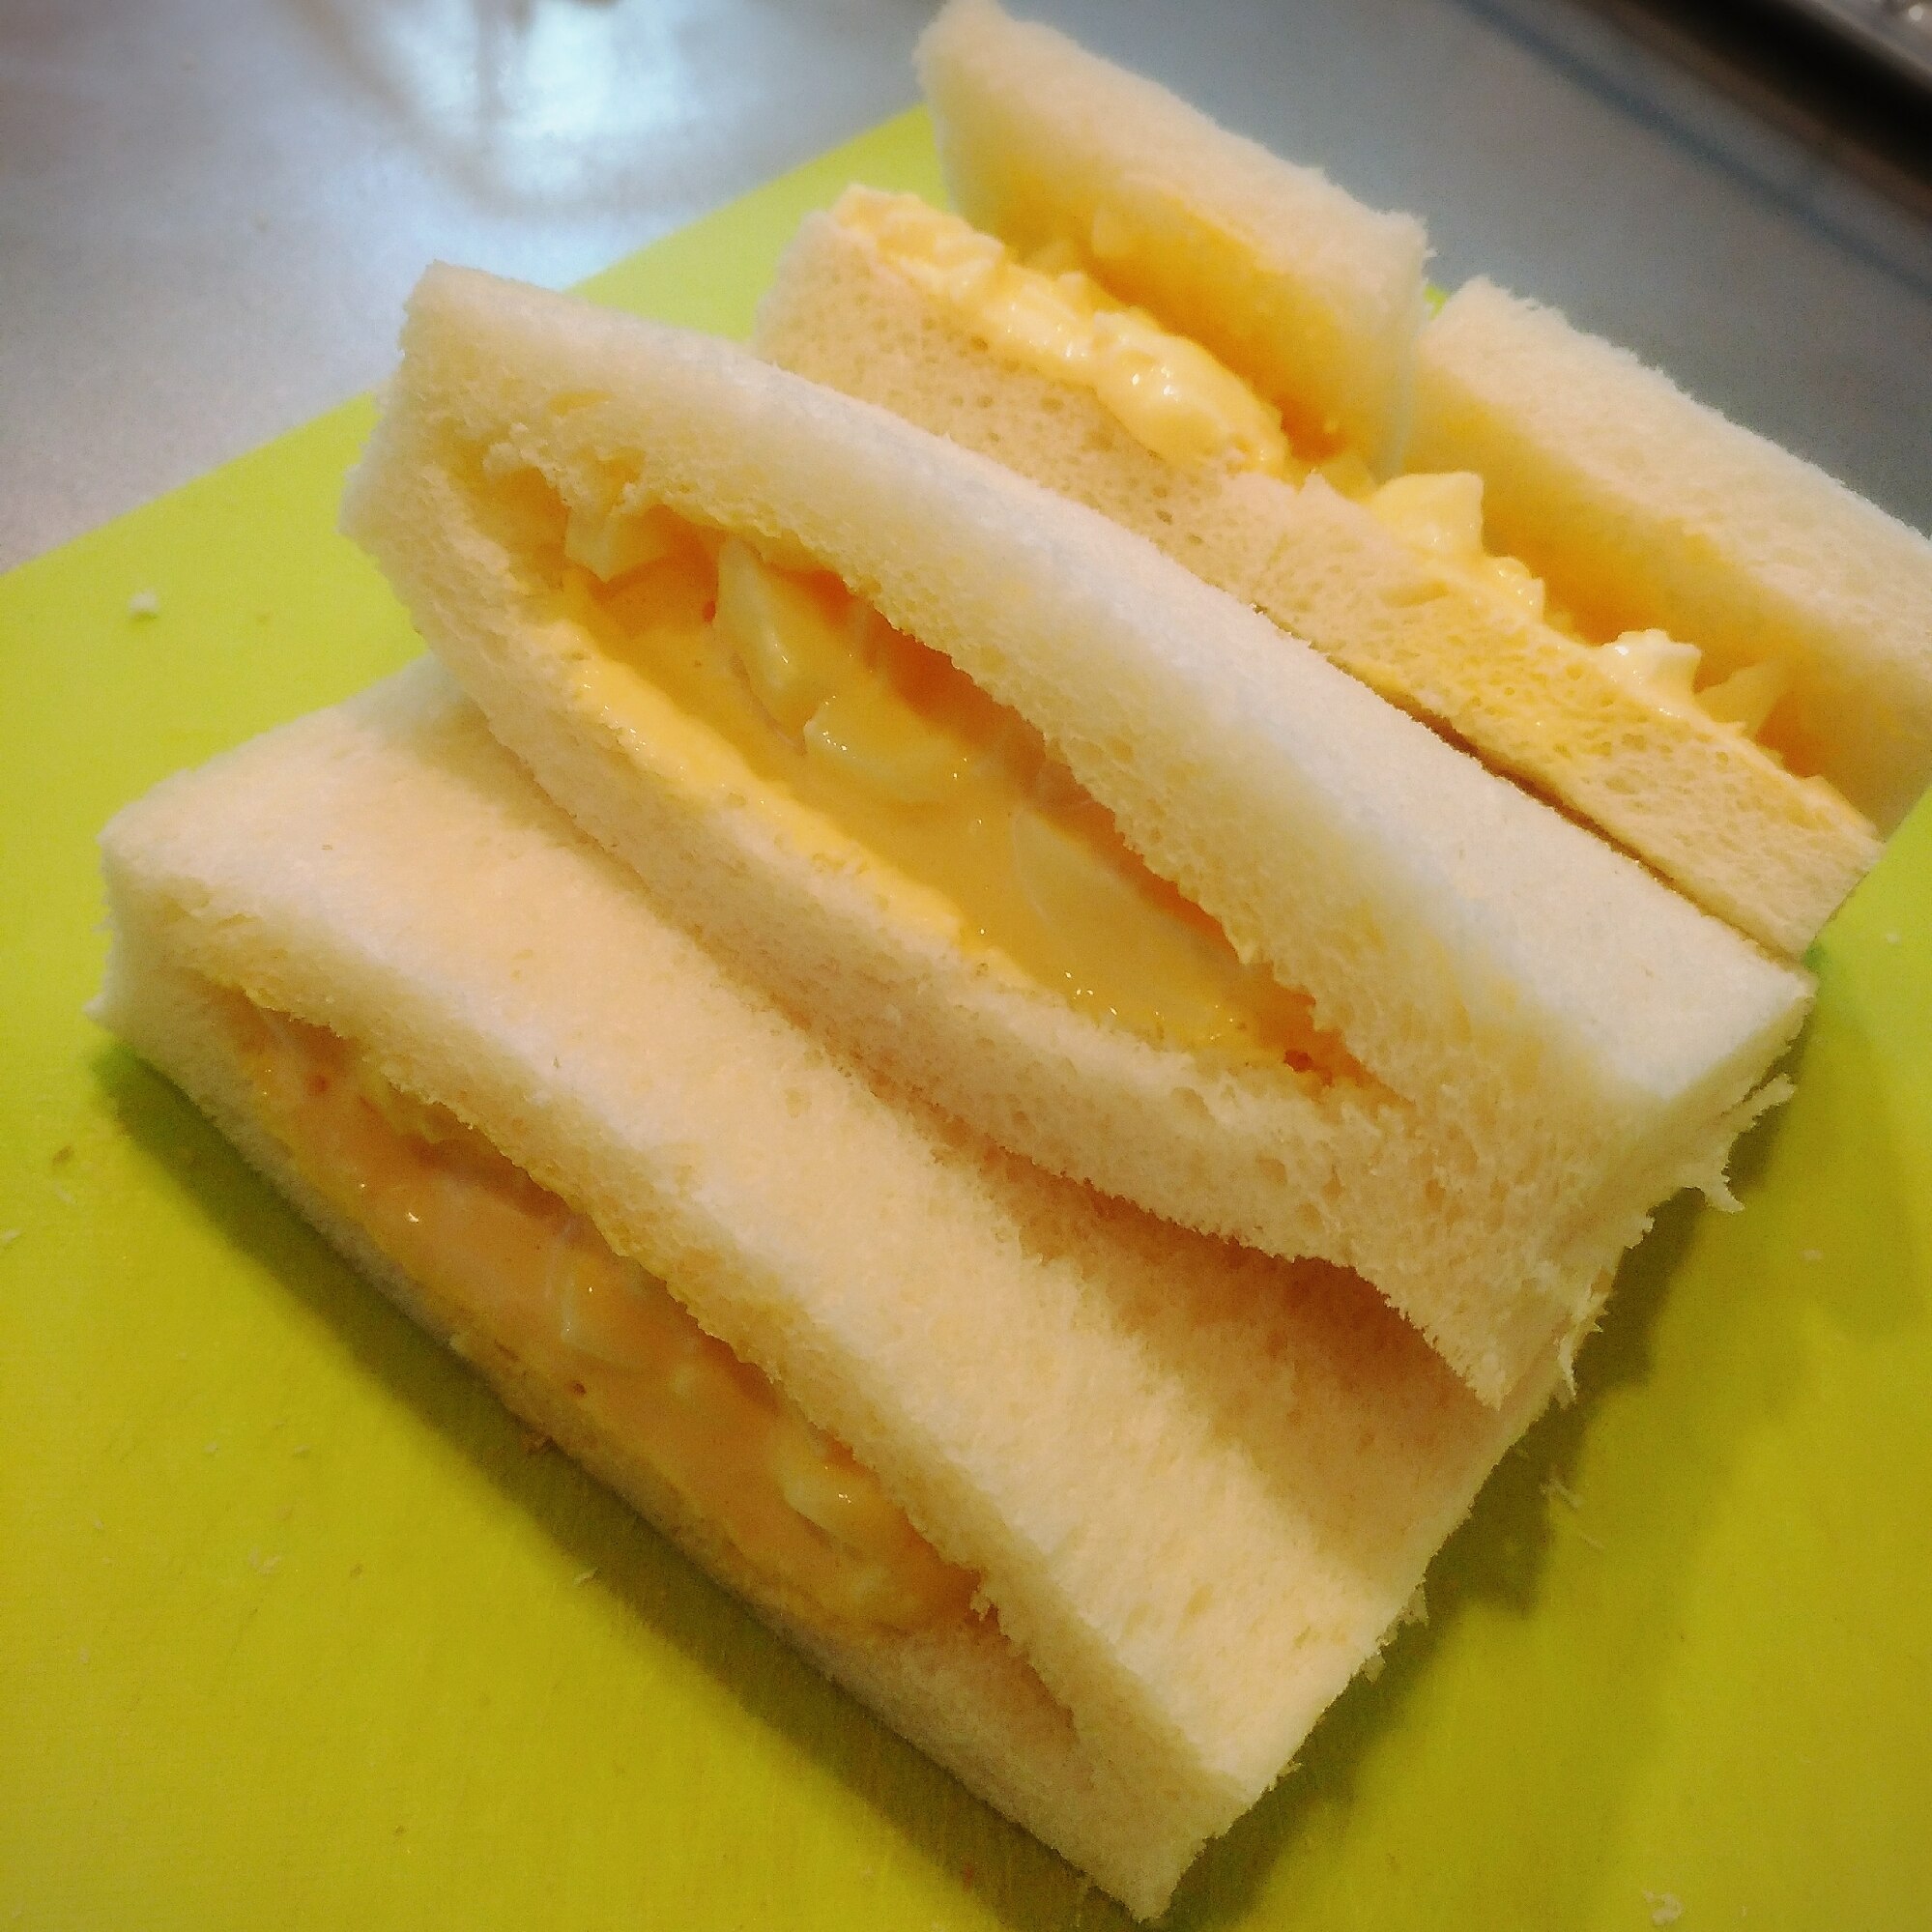 ５枚切食パンで 簡単たまごサンドイッチ レシピ 作り方 By Boof 楽天レシピ